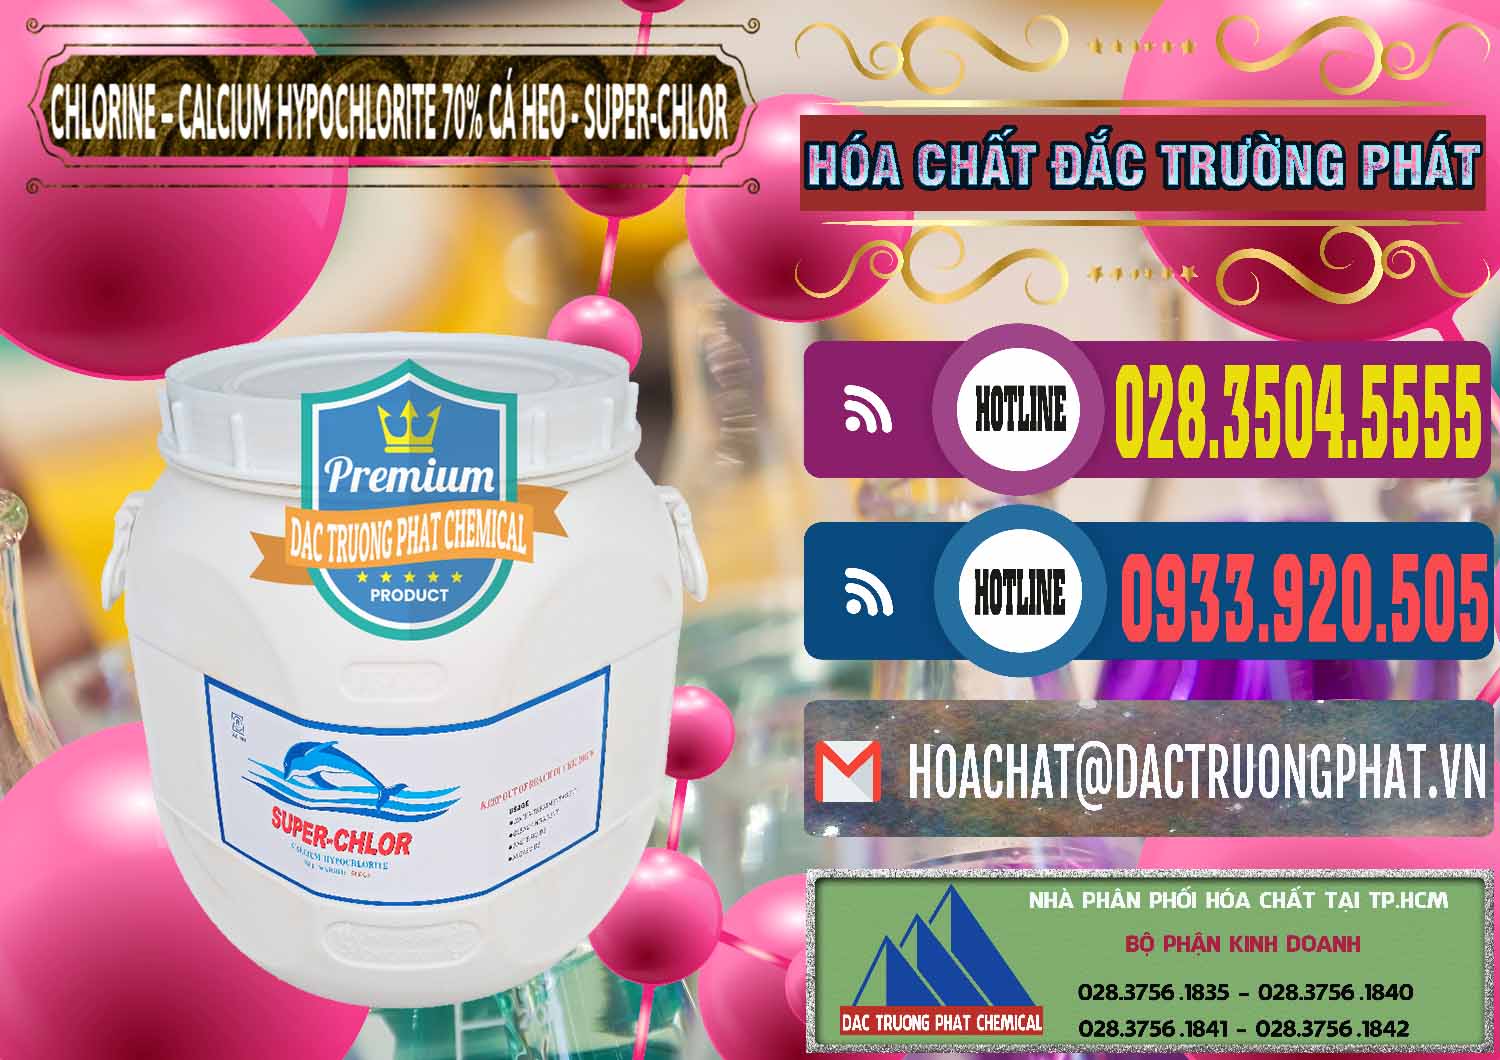 Cty chuyên kinh doanh & bán Clorin - Chlorine Cá Heo 70% Super Chlor Trung Quốc China - 0058 - Nhà cung cấp _ bán hóa chất tại TP.HCM - muabanhoachat.com.vn